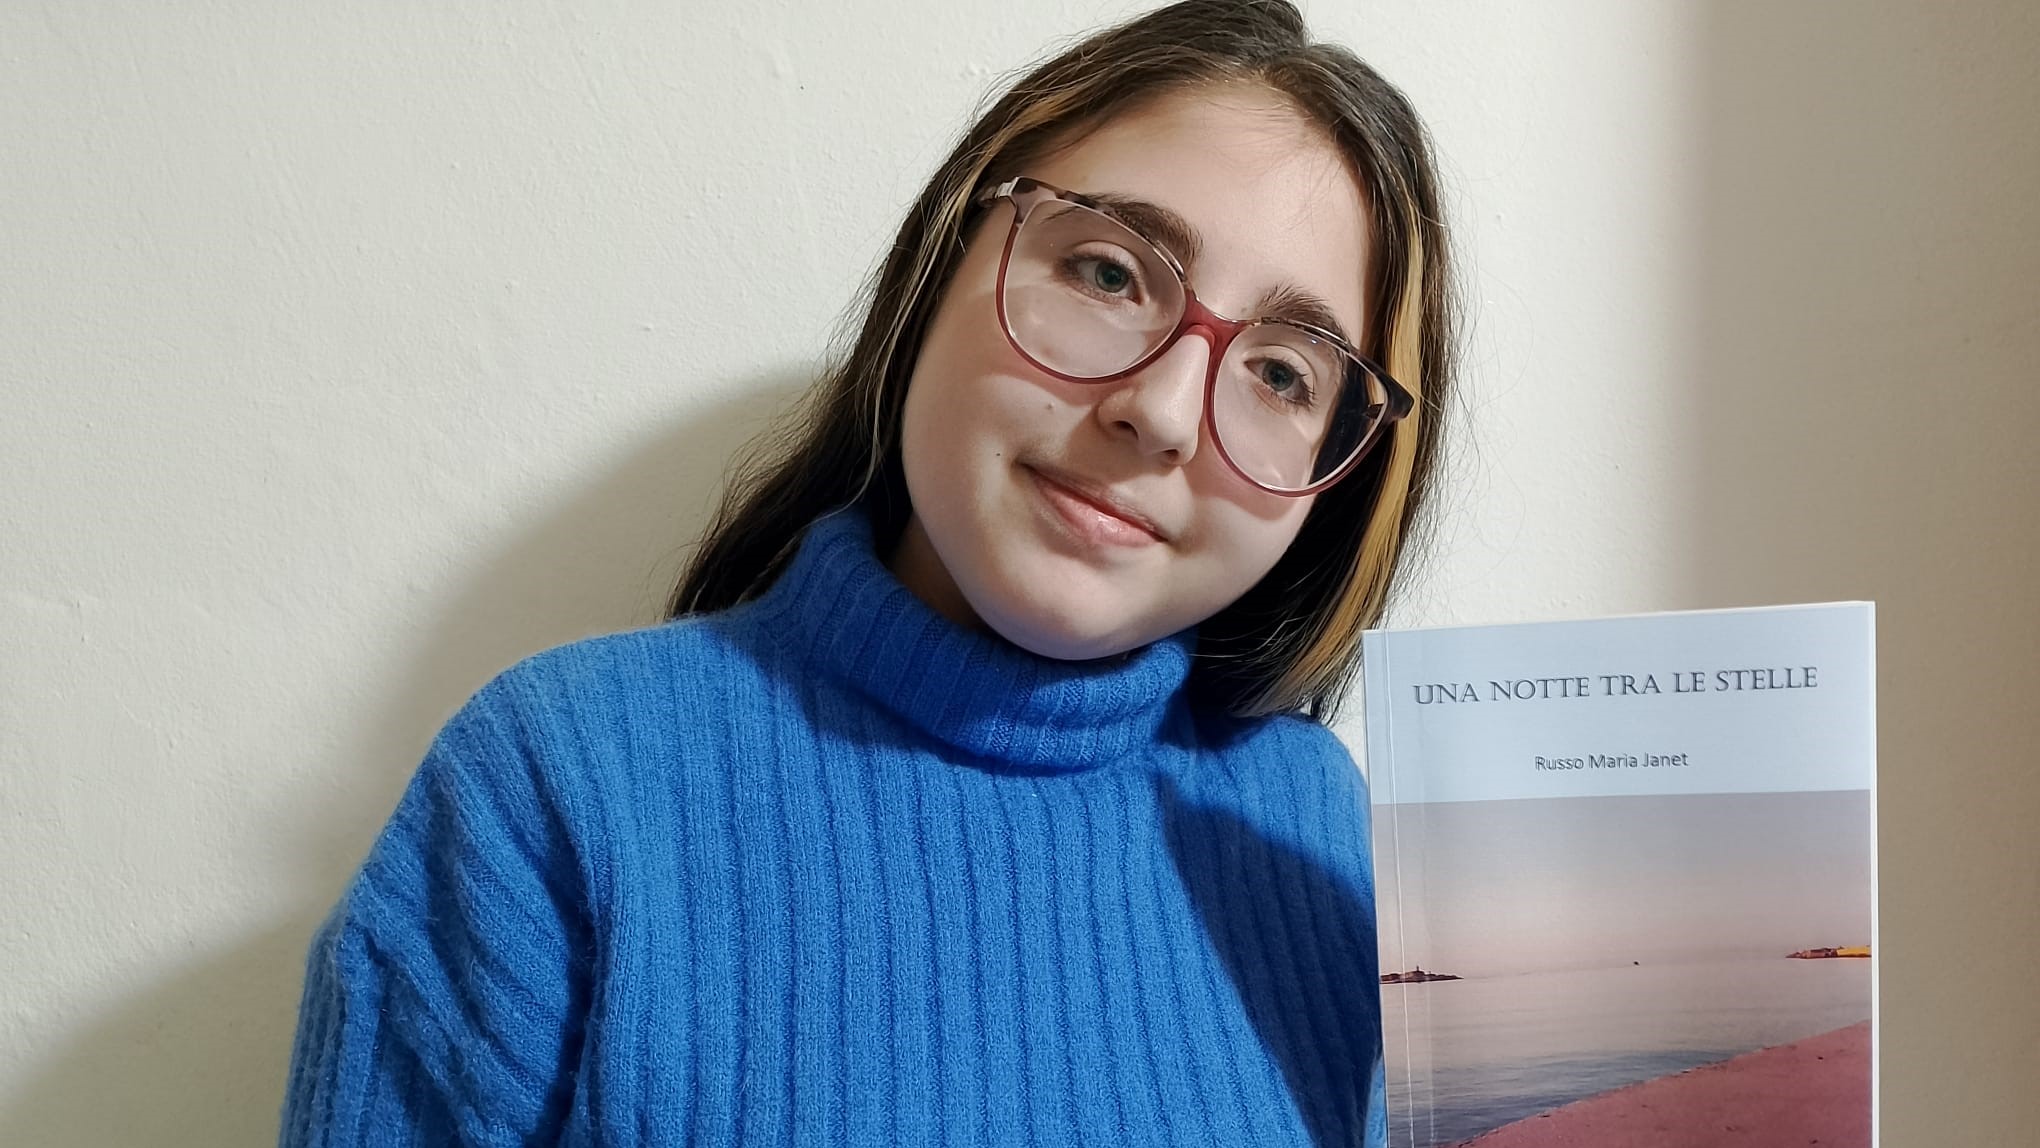 Caltanissetta, la 14enne Maria Janet Russo firma il suo primo romanzo: “Una notte tra le stelle”